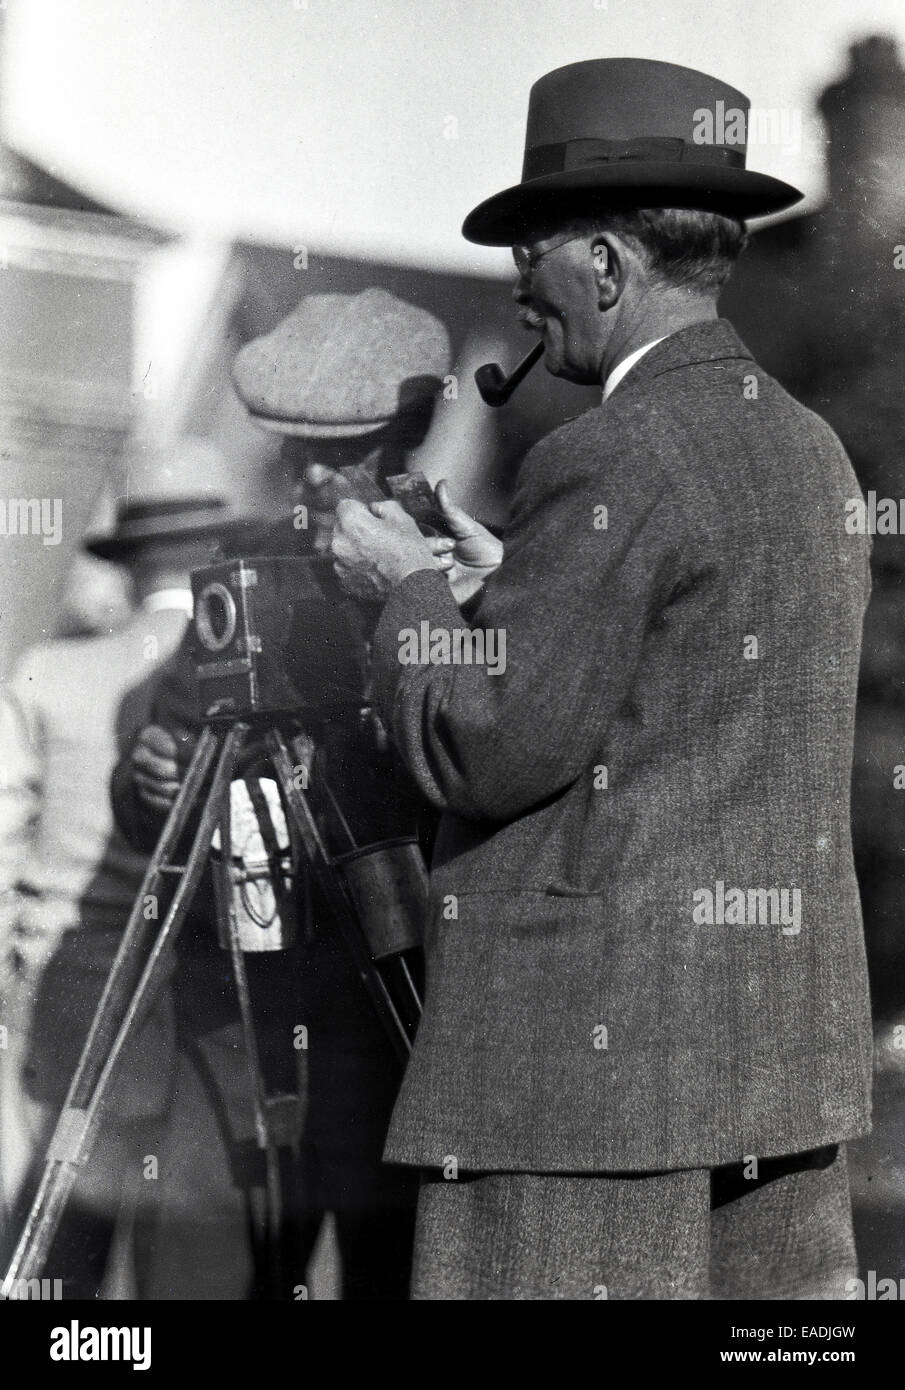 1930s, foto storiche che mostra un gentleman fotografo che indossa un abito, un cappello e una tubazione, con il suo assistente in piedi dalla telecamera che è su un treppiede. Il fotografo è guardando due immagini nelle sue mani, che sono eventualmente negativi di vetro, Foto Stock